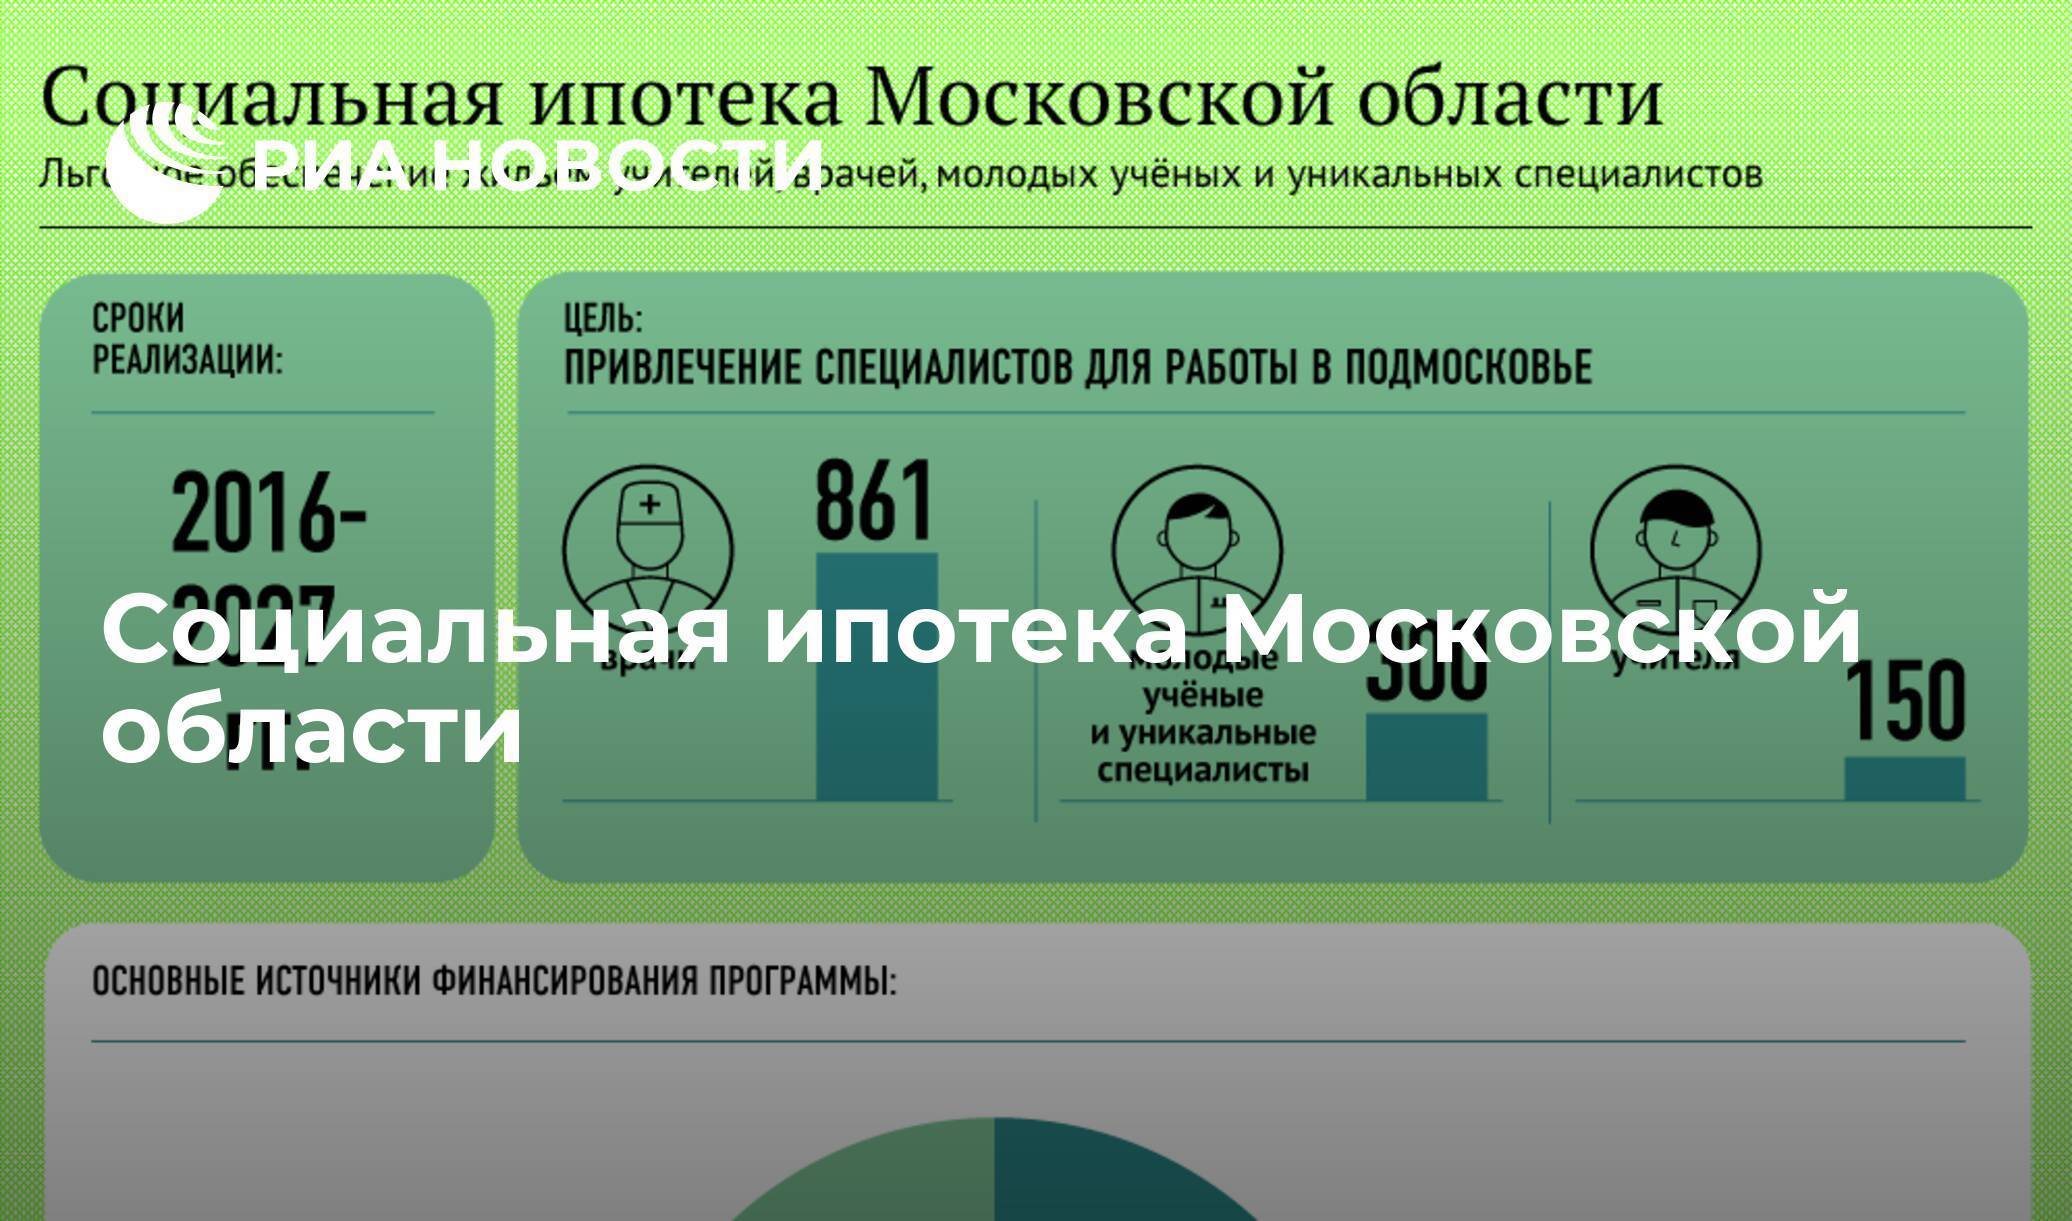 Программа социальной ипотеки в москве. условия предоставления